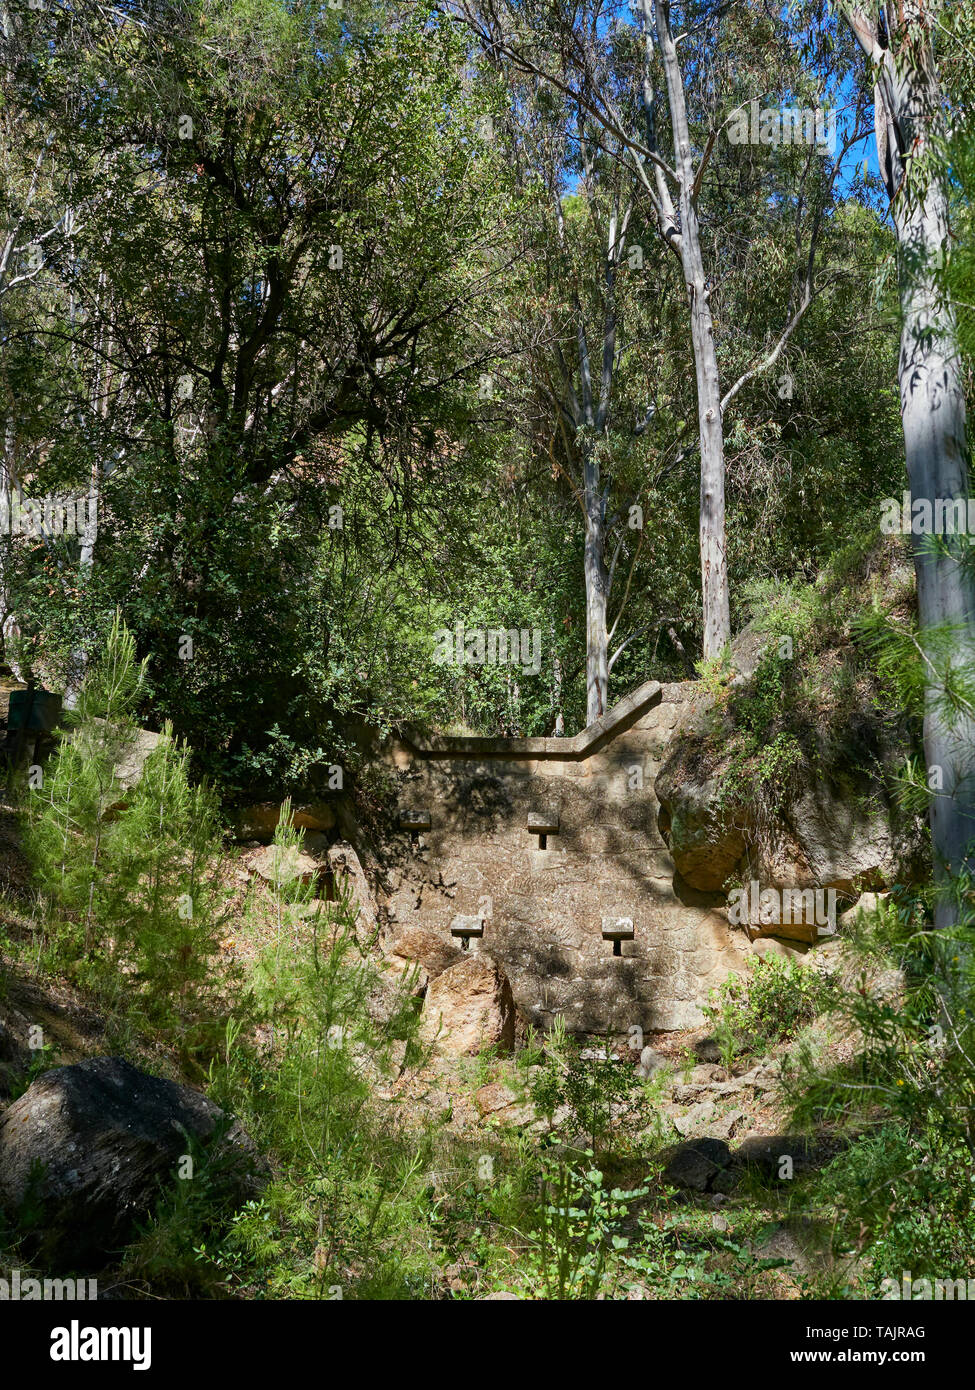 L'un des nombreux ponceaux construits en pierre le long du sentier Sentier el Santo qui aide à contrôler les crues éclair dans les périodes de fortes précipitations. Andalousie, espagne. Banque D'Images